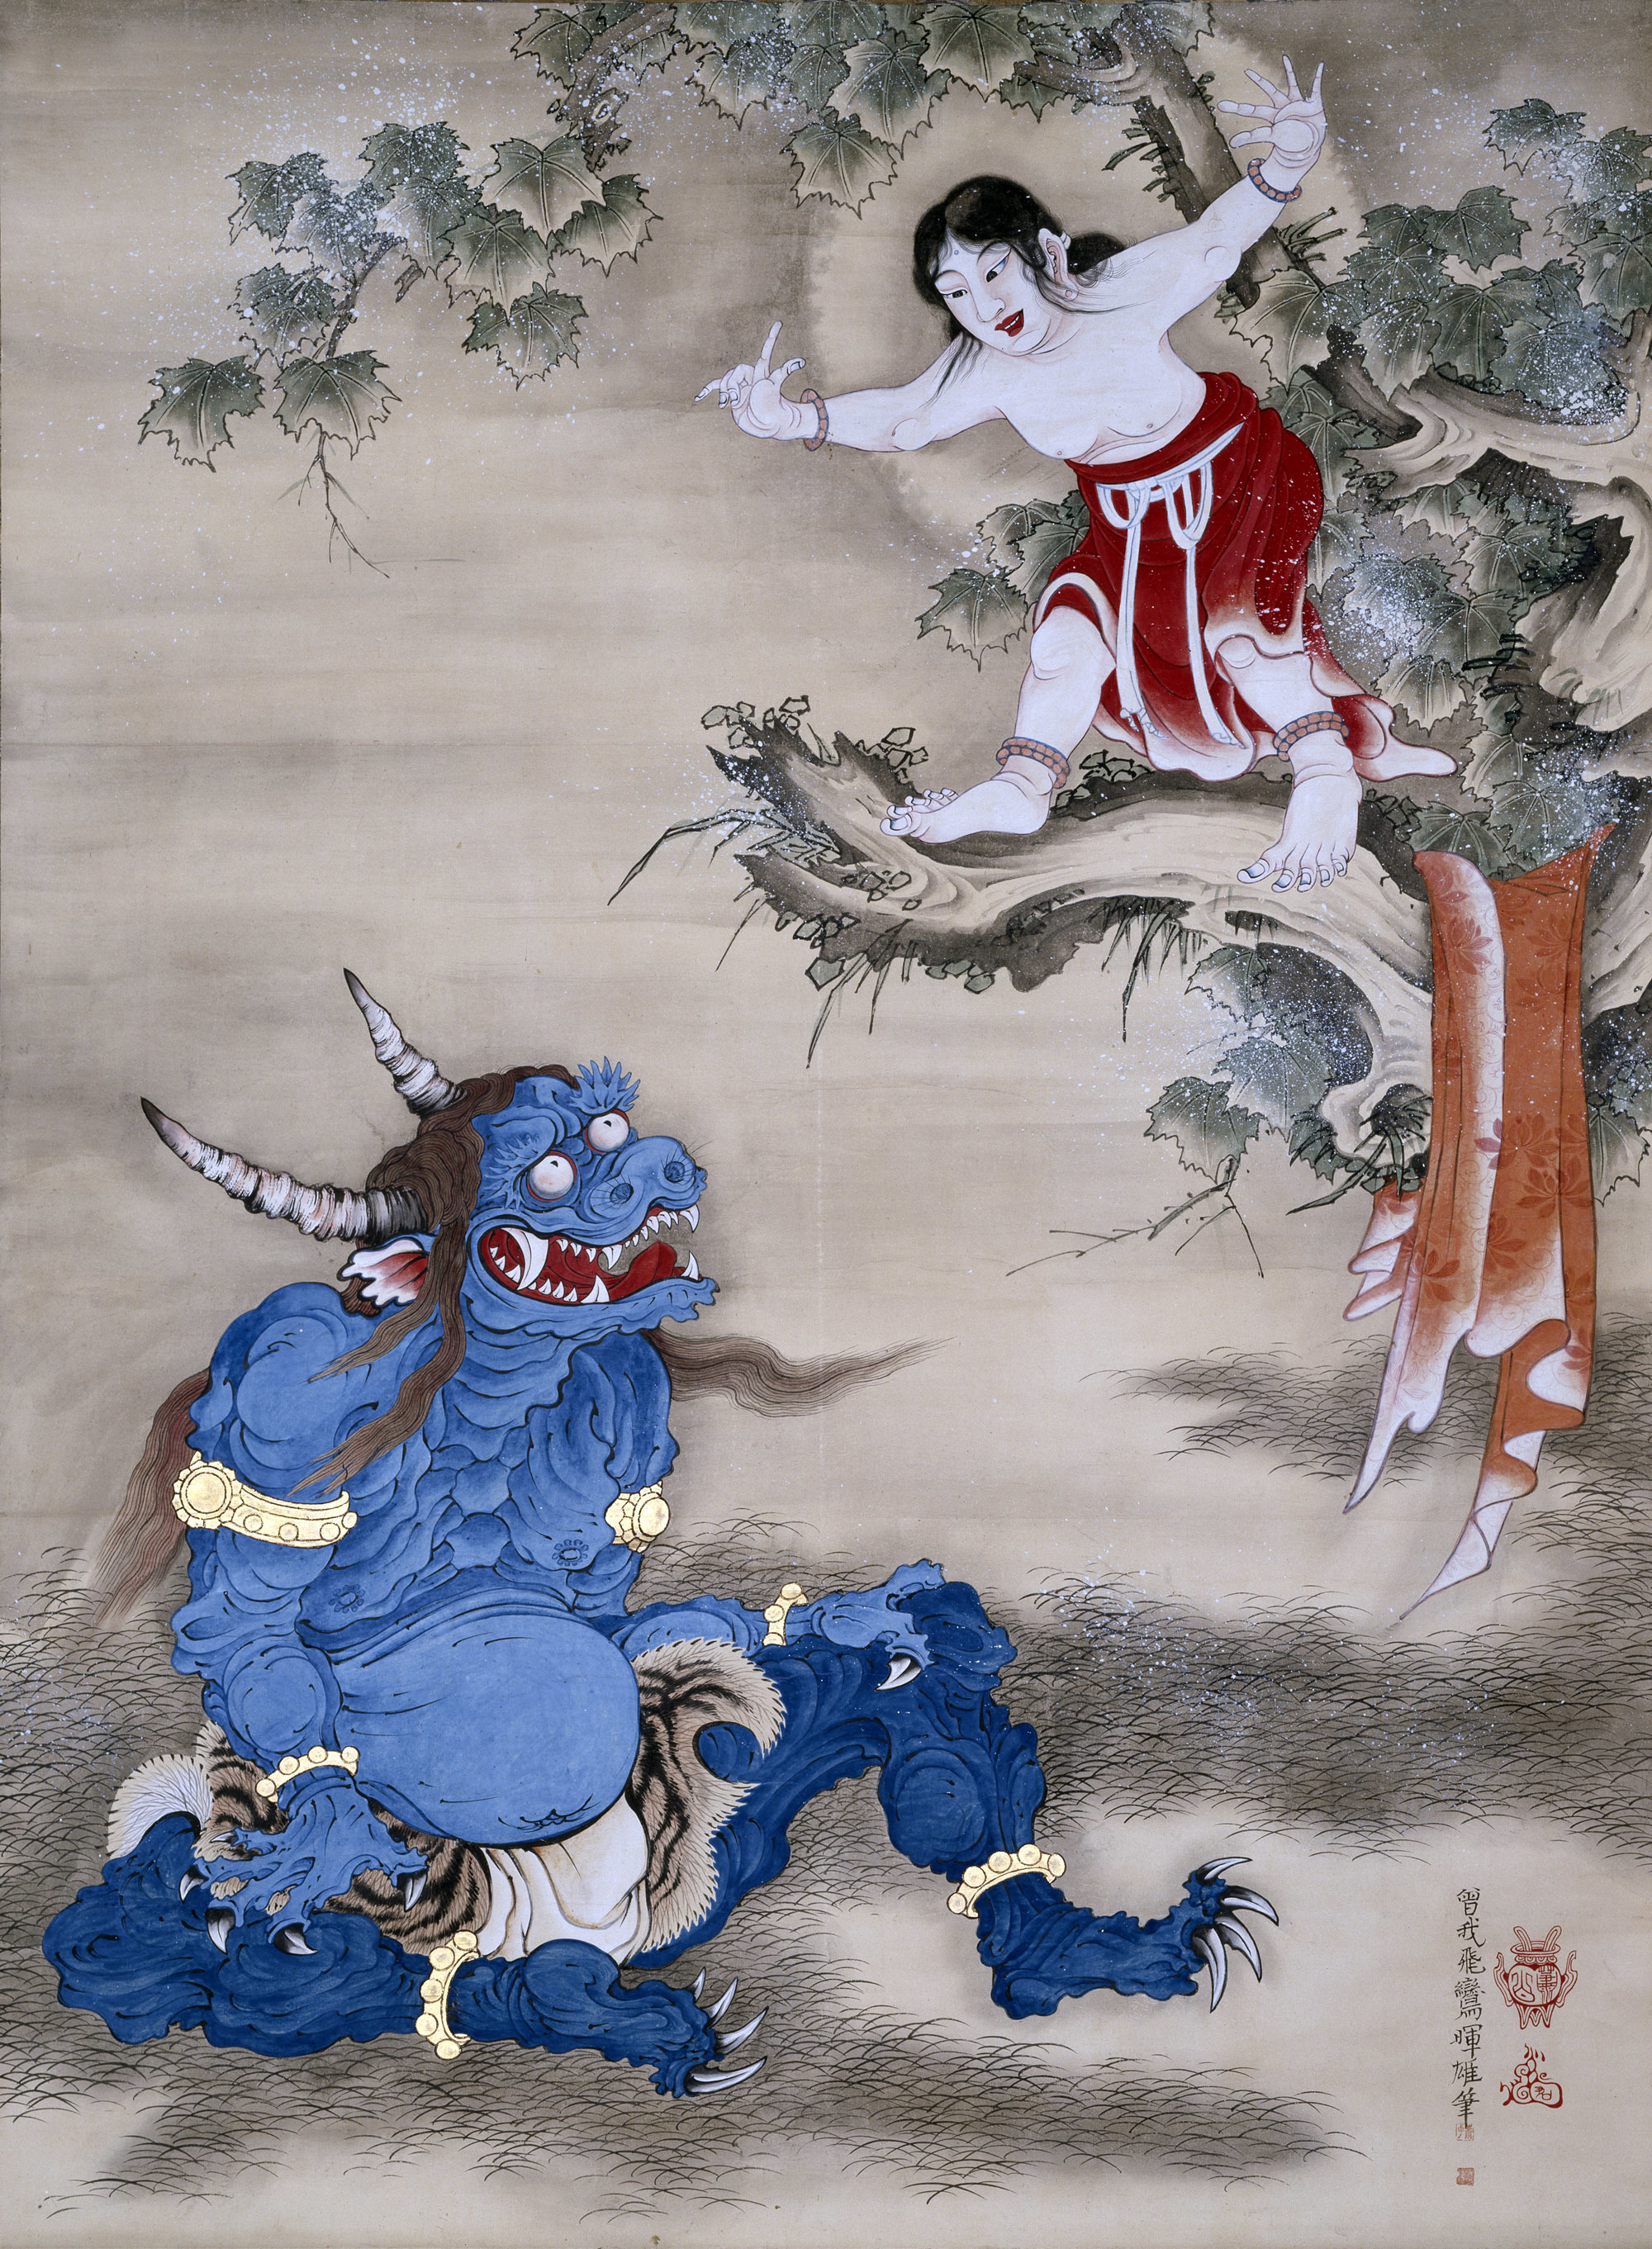 曽我蕭白　《雪山童子図》　紙本着色　一幅　169.8×124.8　明和元年（1764）頃　三重・継松寺